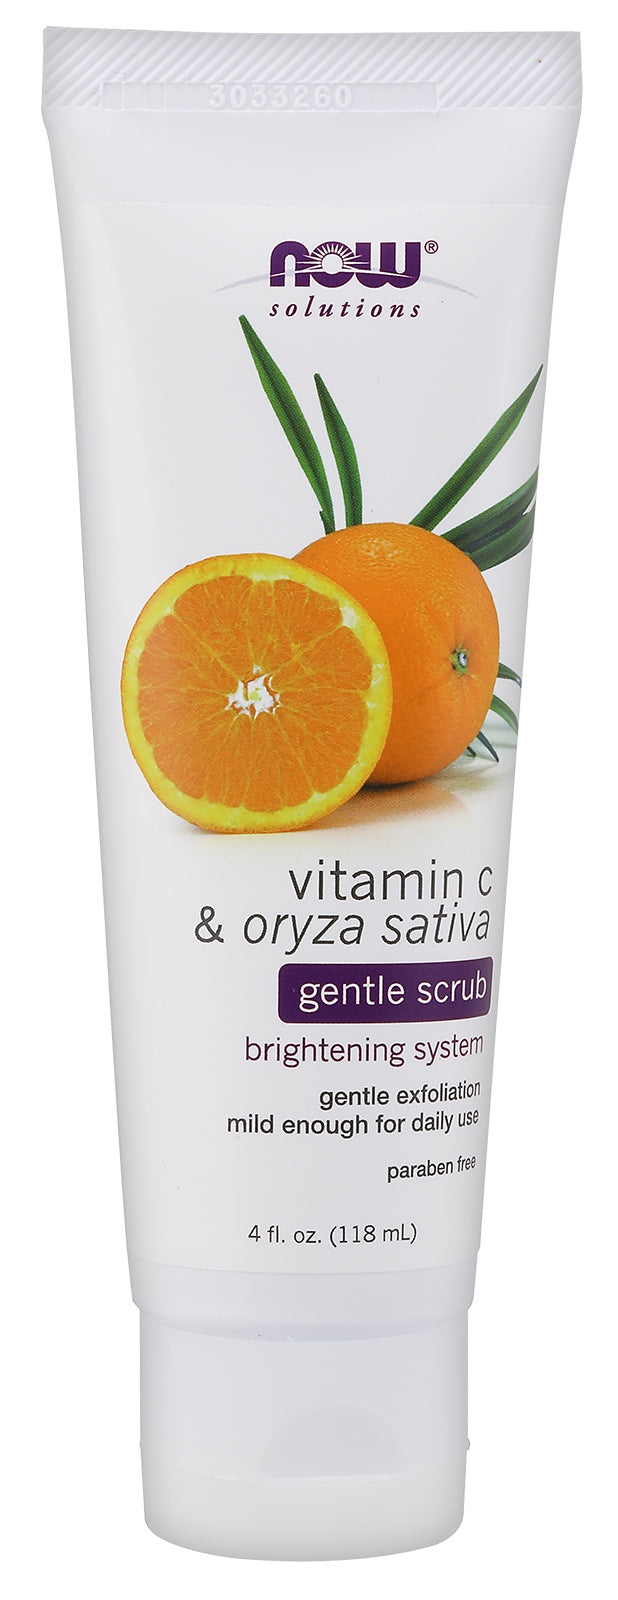 Vitamin C & Oryza Sativa Gentle Scrub, 4 fl oz. , Brand_NOW Foods Form_Scrub Size_4 Fl Oz